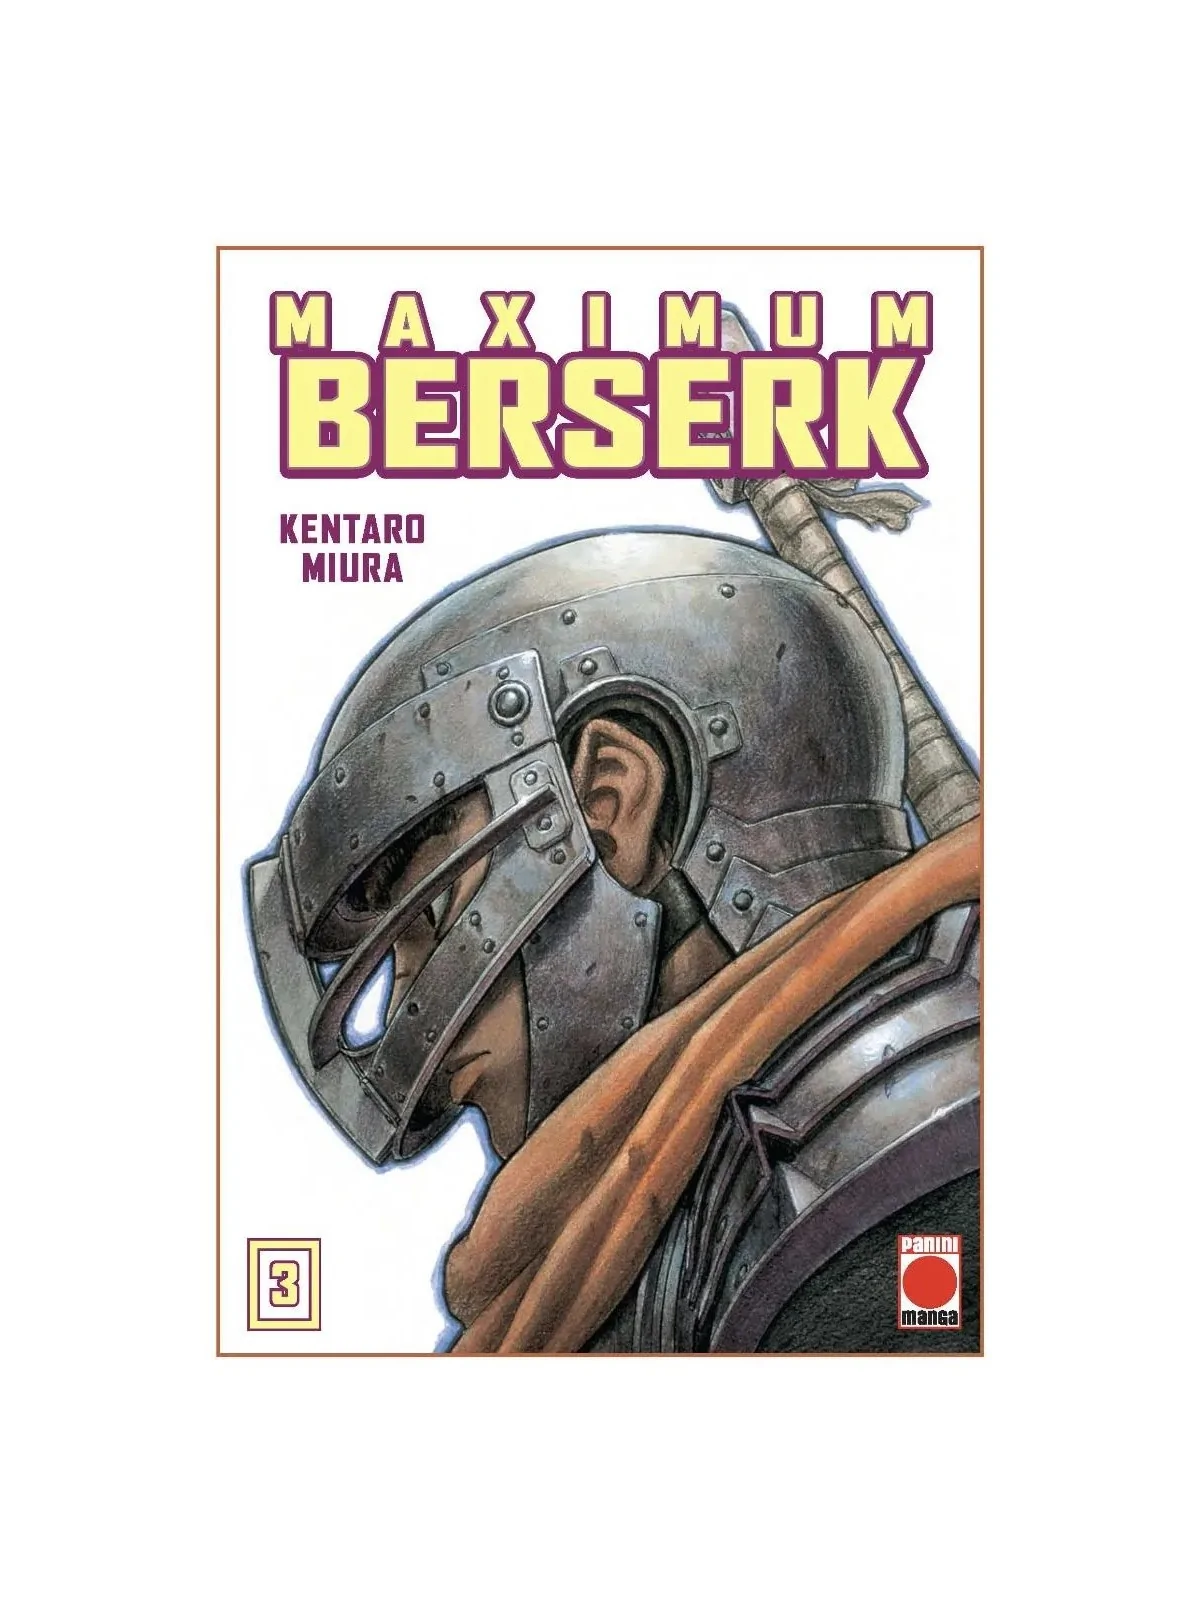 Comprar Maximum Berserk 03 barato al mejor precio 16,10 € de Panini Co